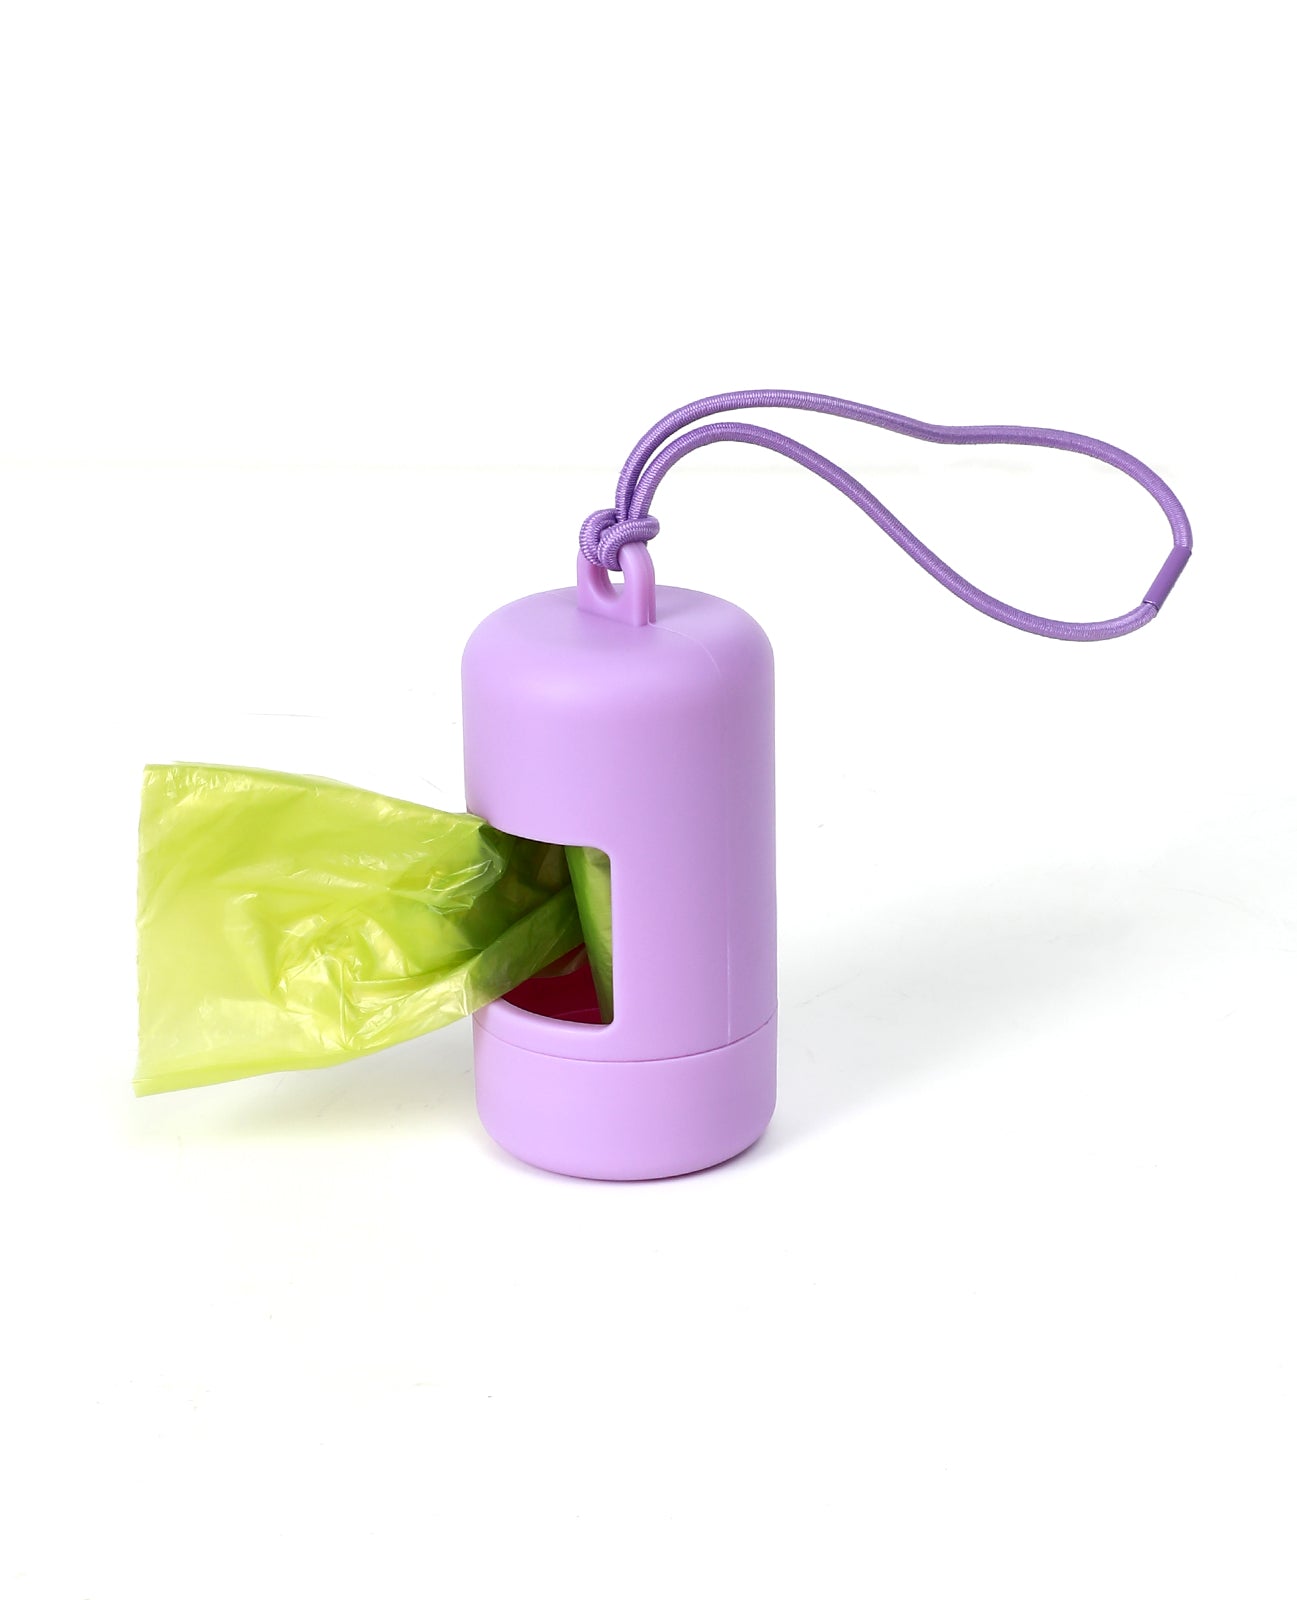 Poop Bag Carrier - Lilac Purple